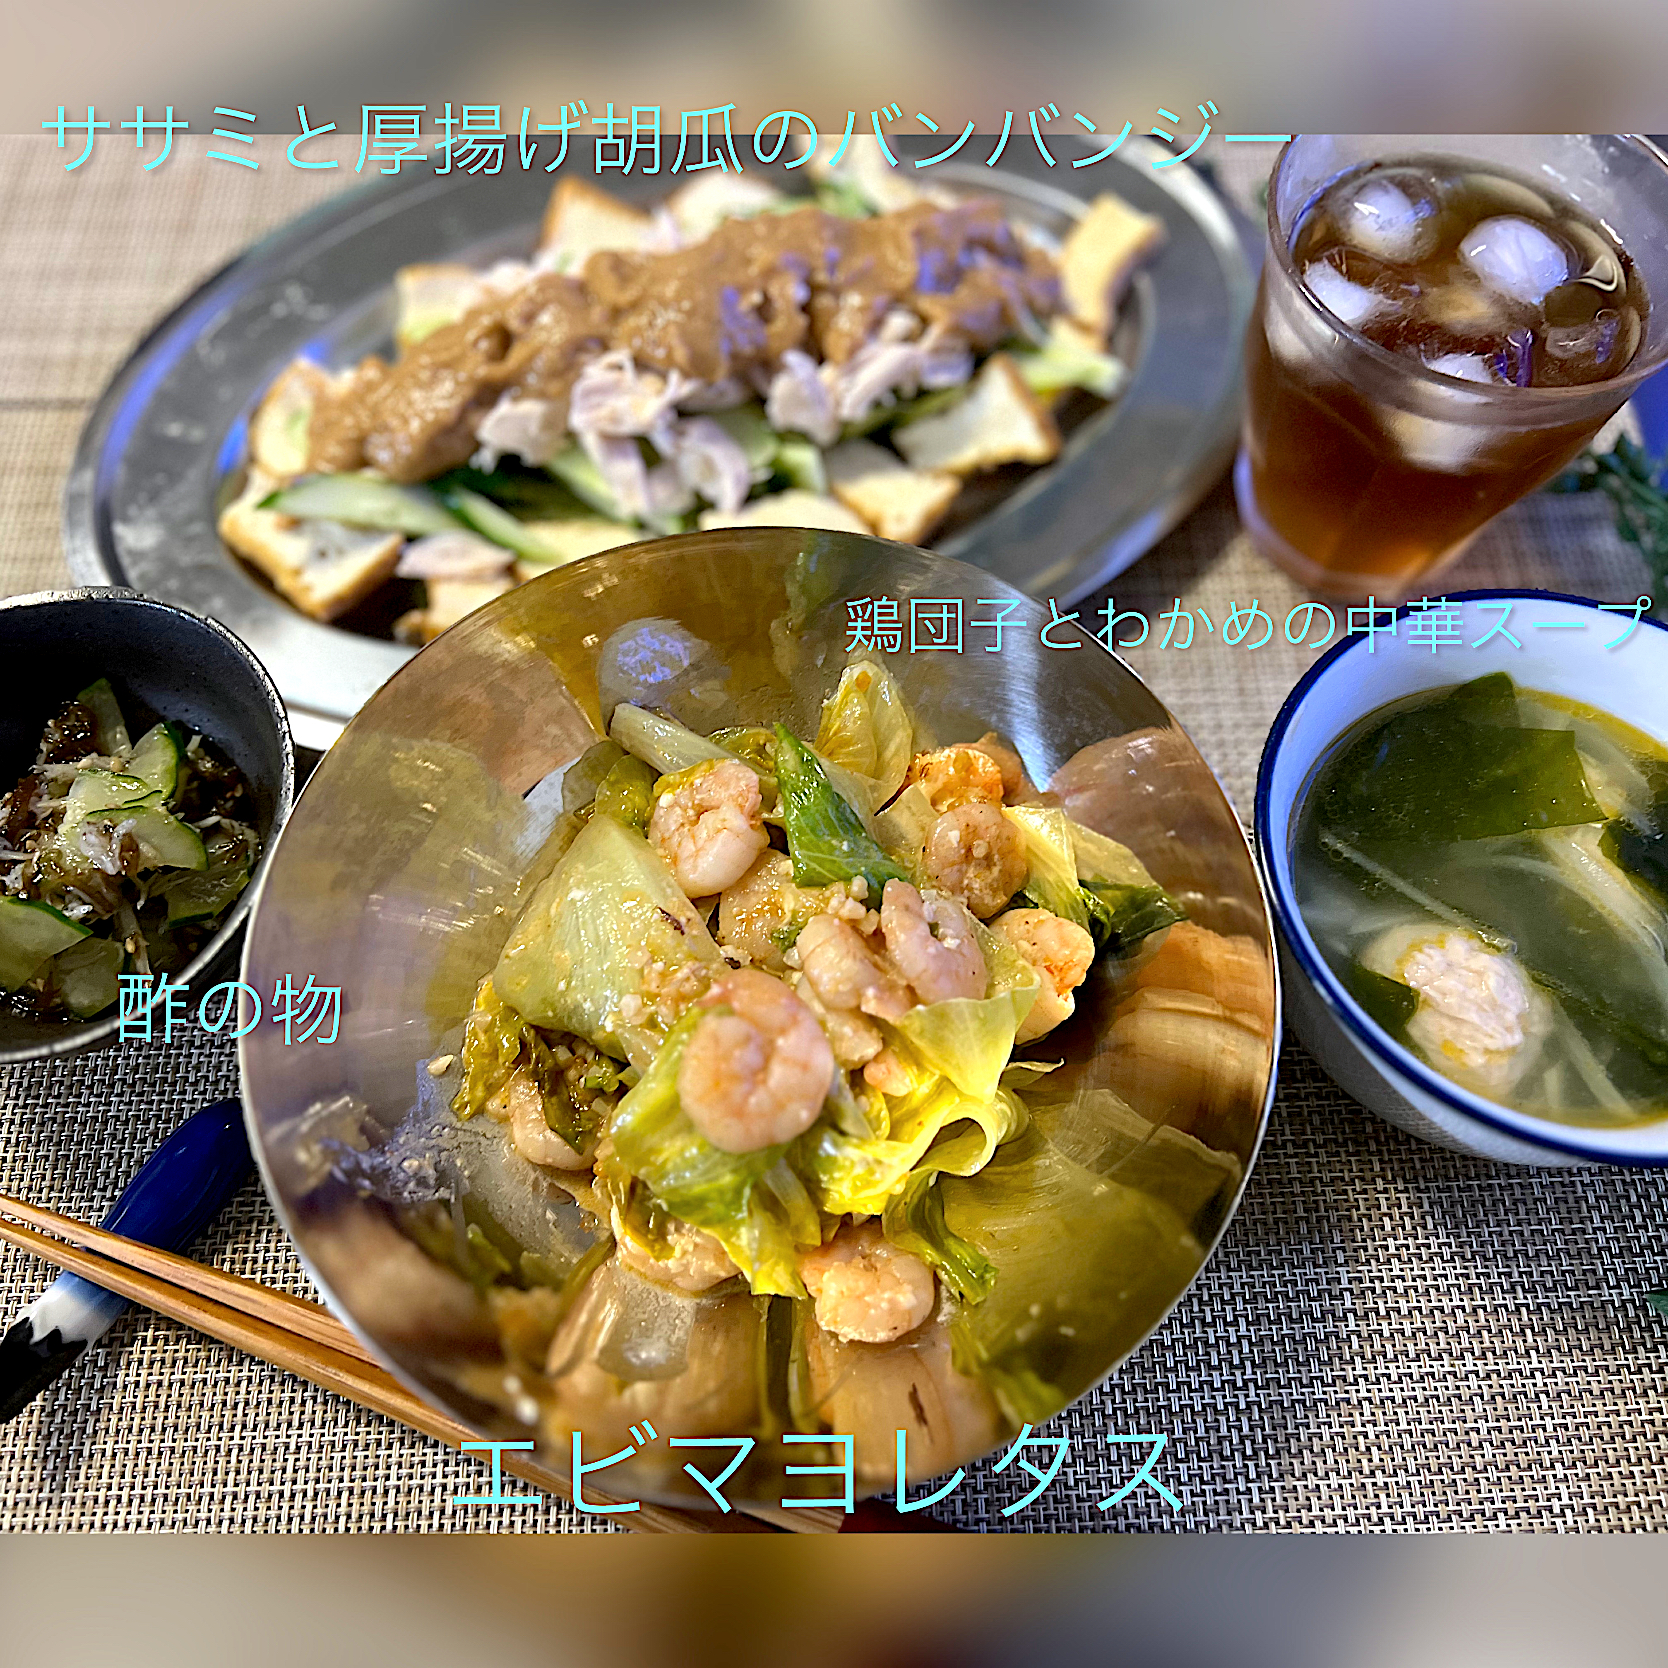 FIKA789さんの料理 こっくりおいしい エビマヨ炒め